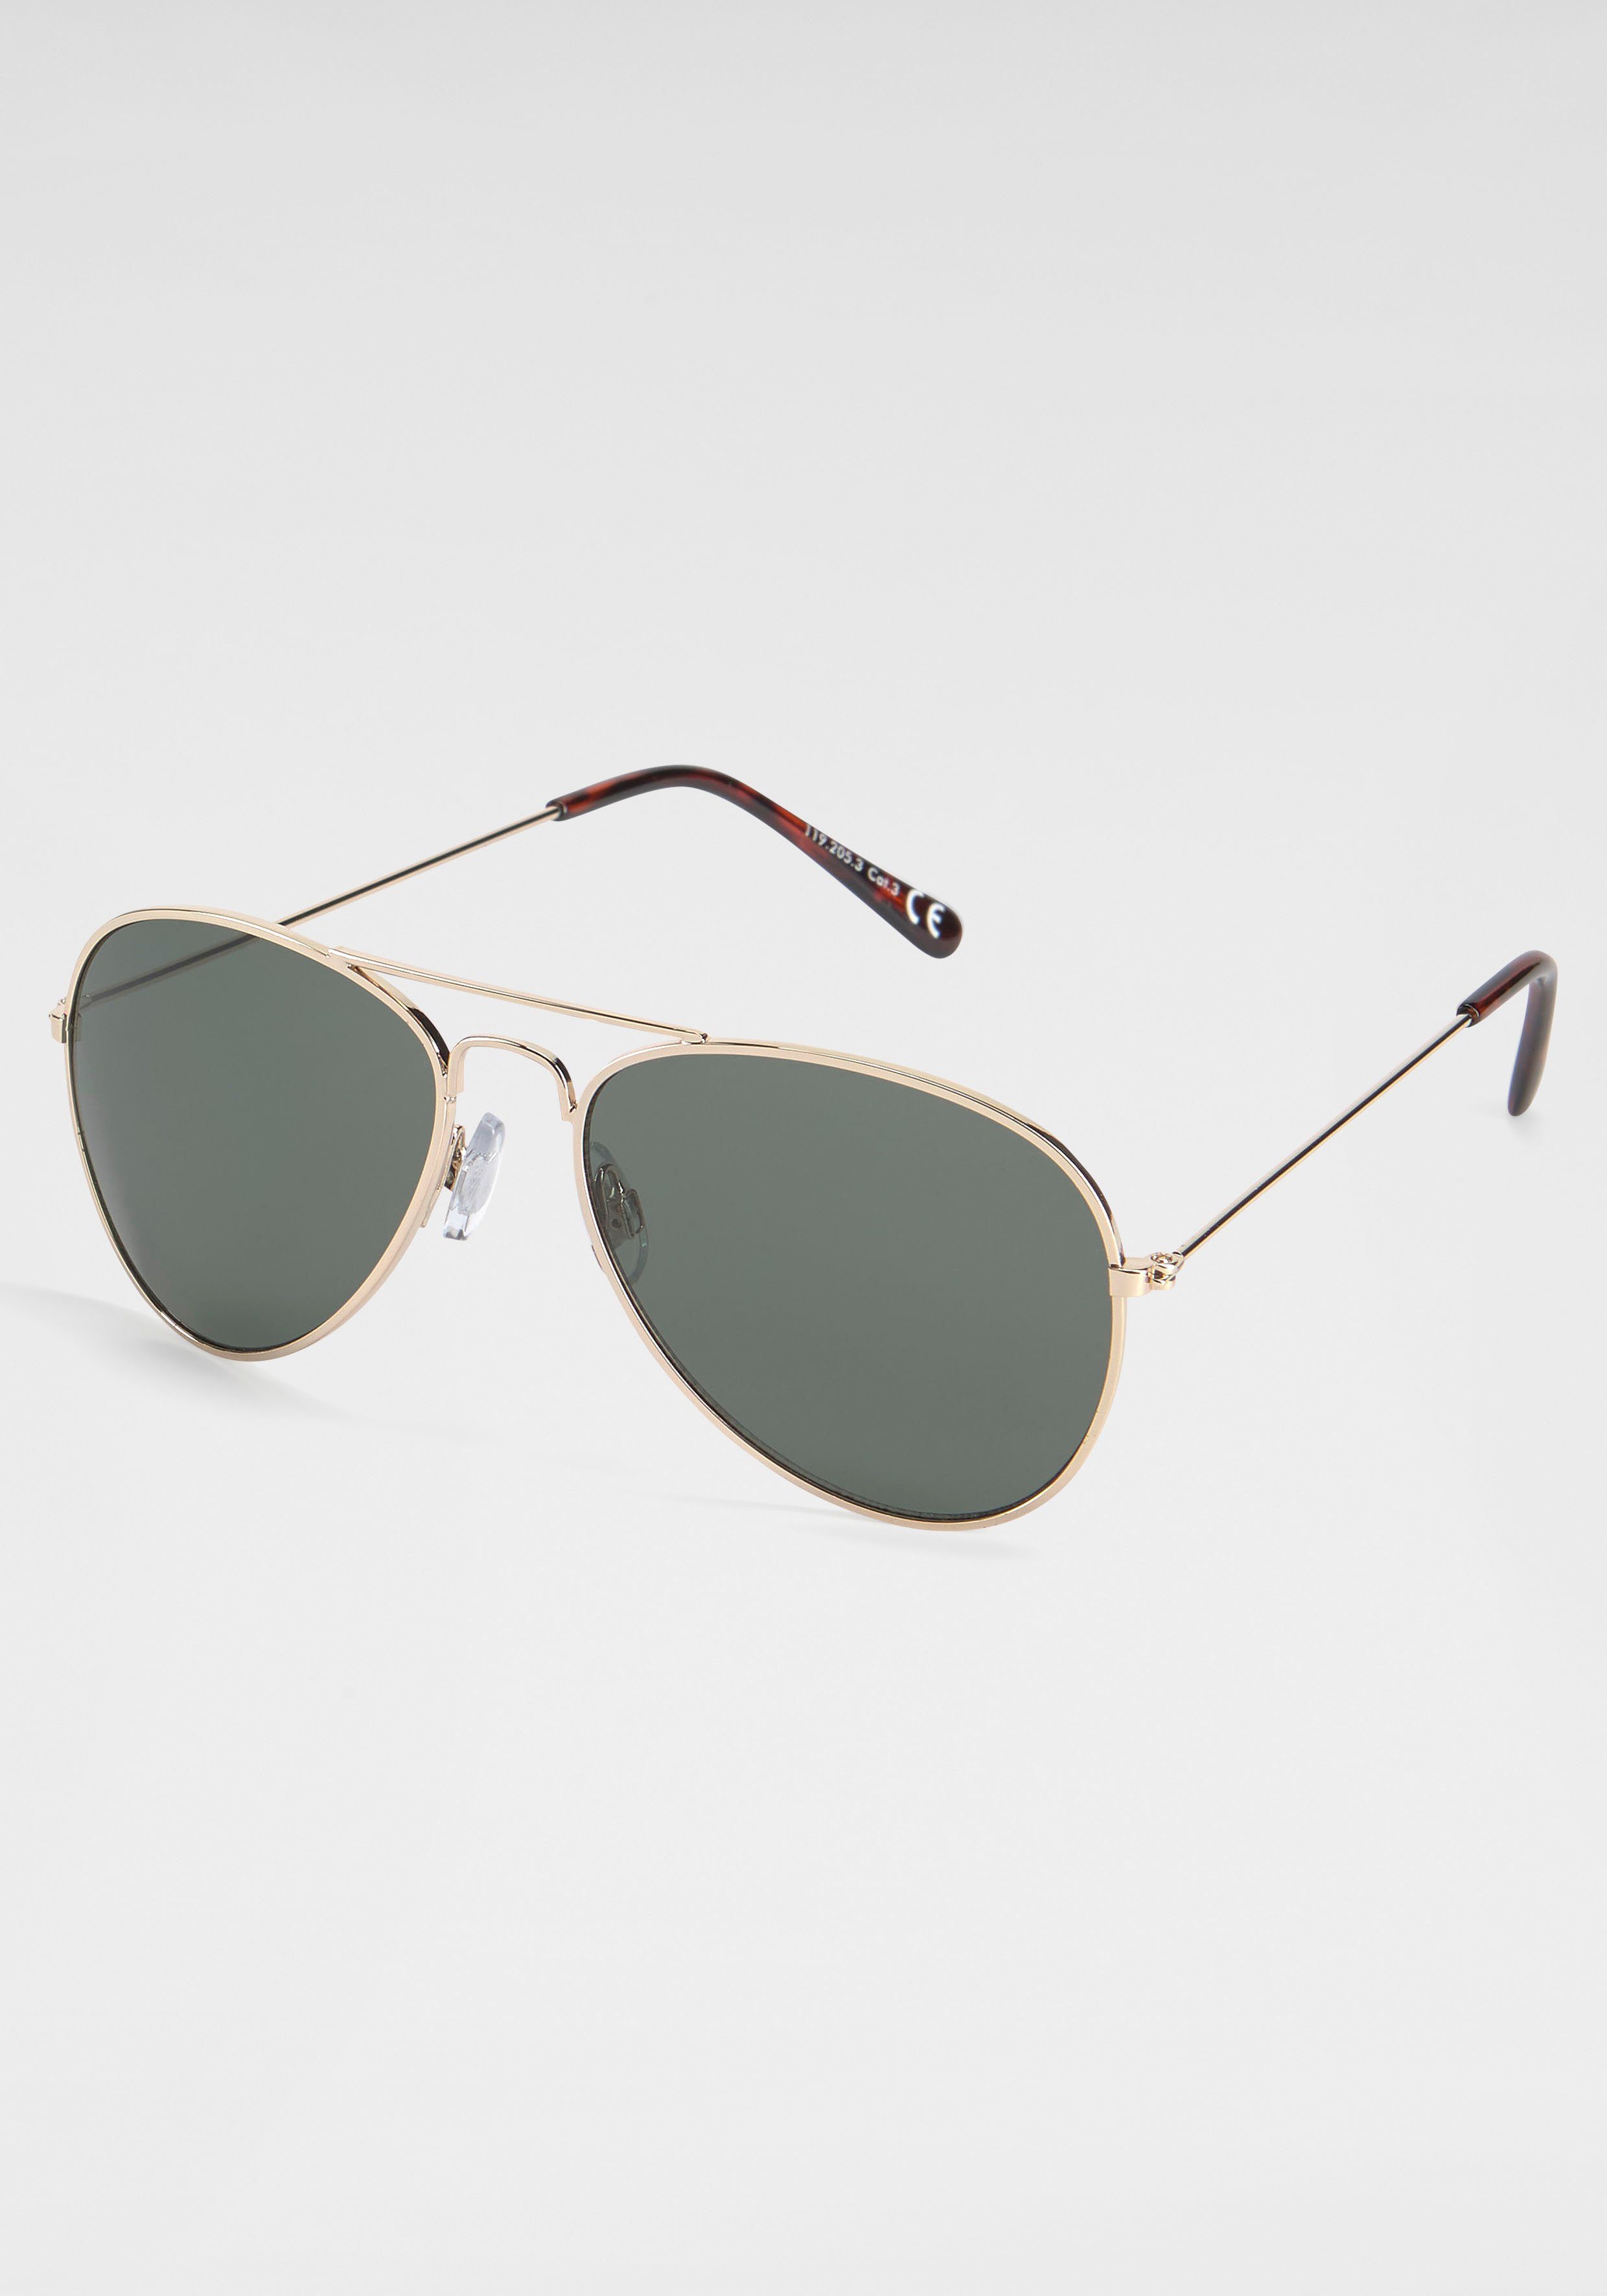 [Besonderheit, Qualitätsprodukte] PRIMETTA Eyewear Sonnenbrille